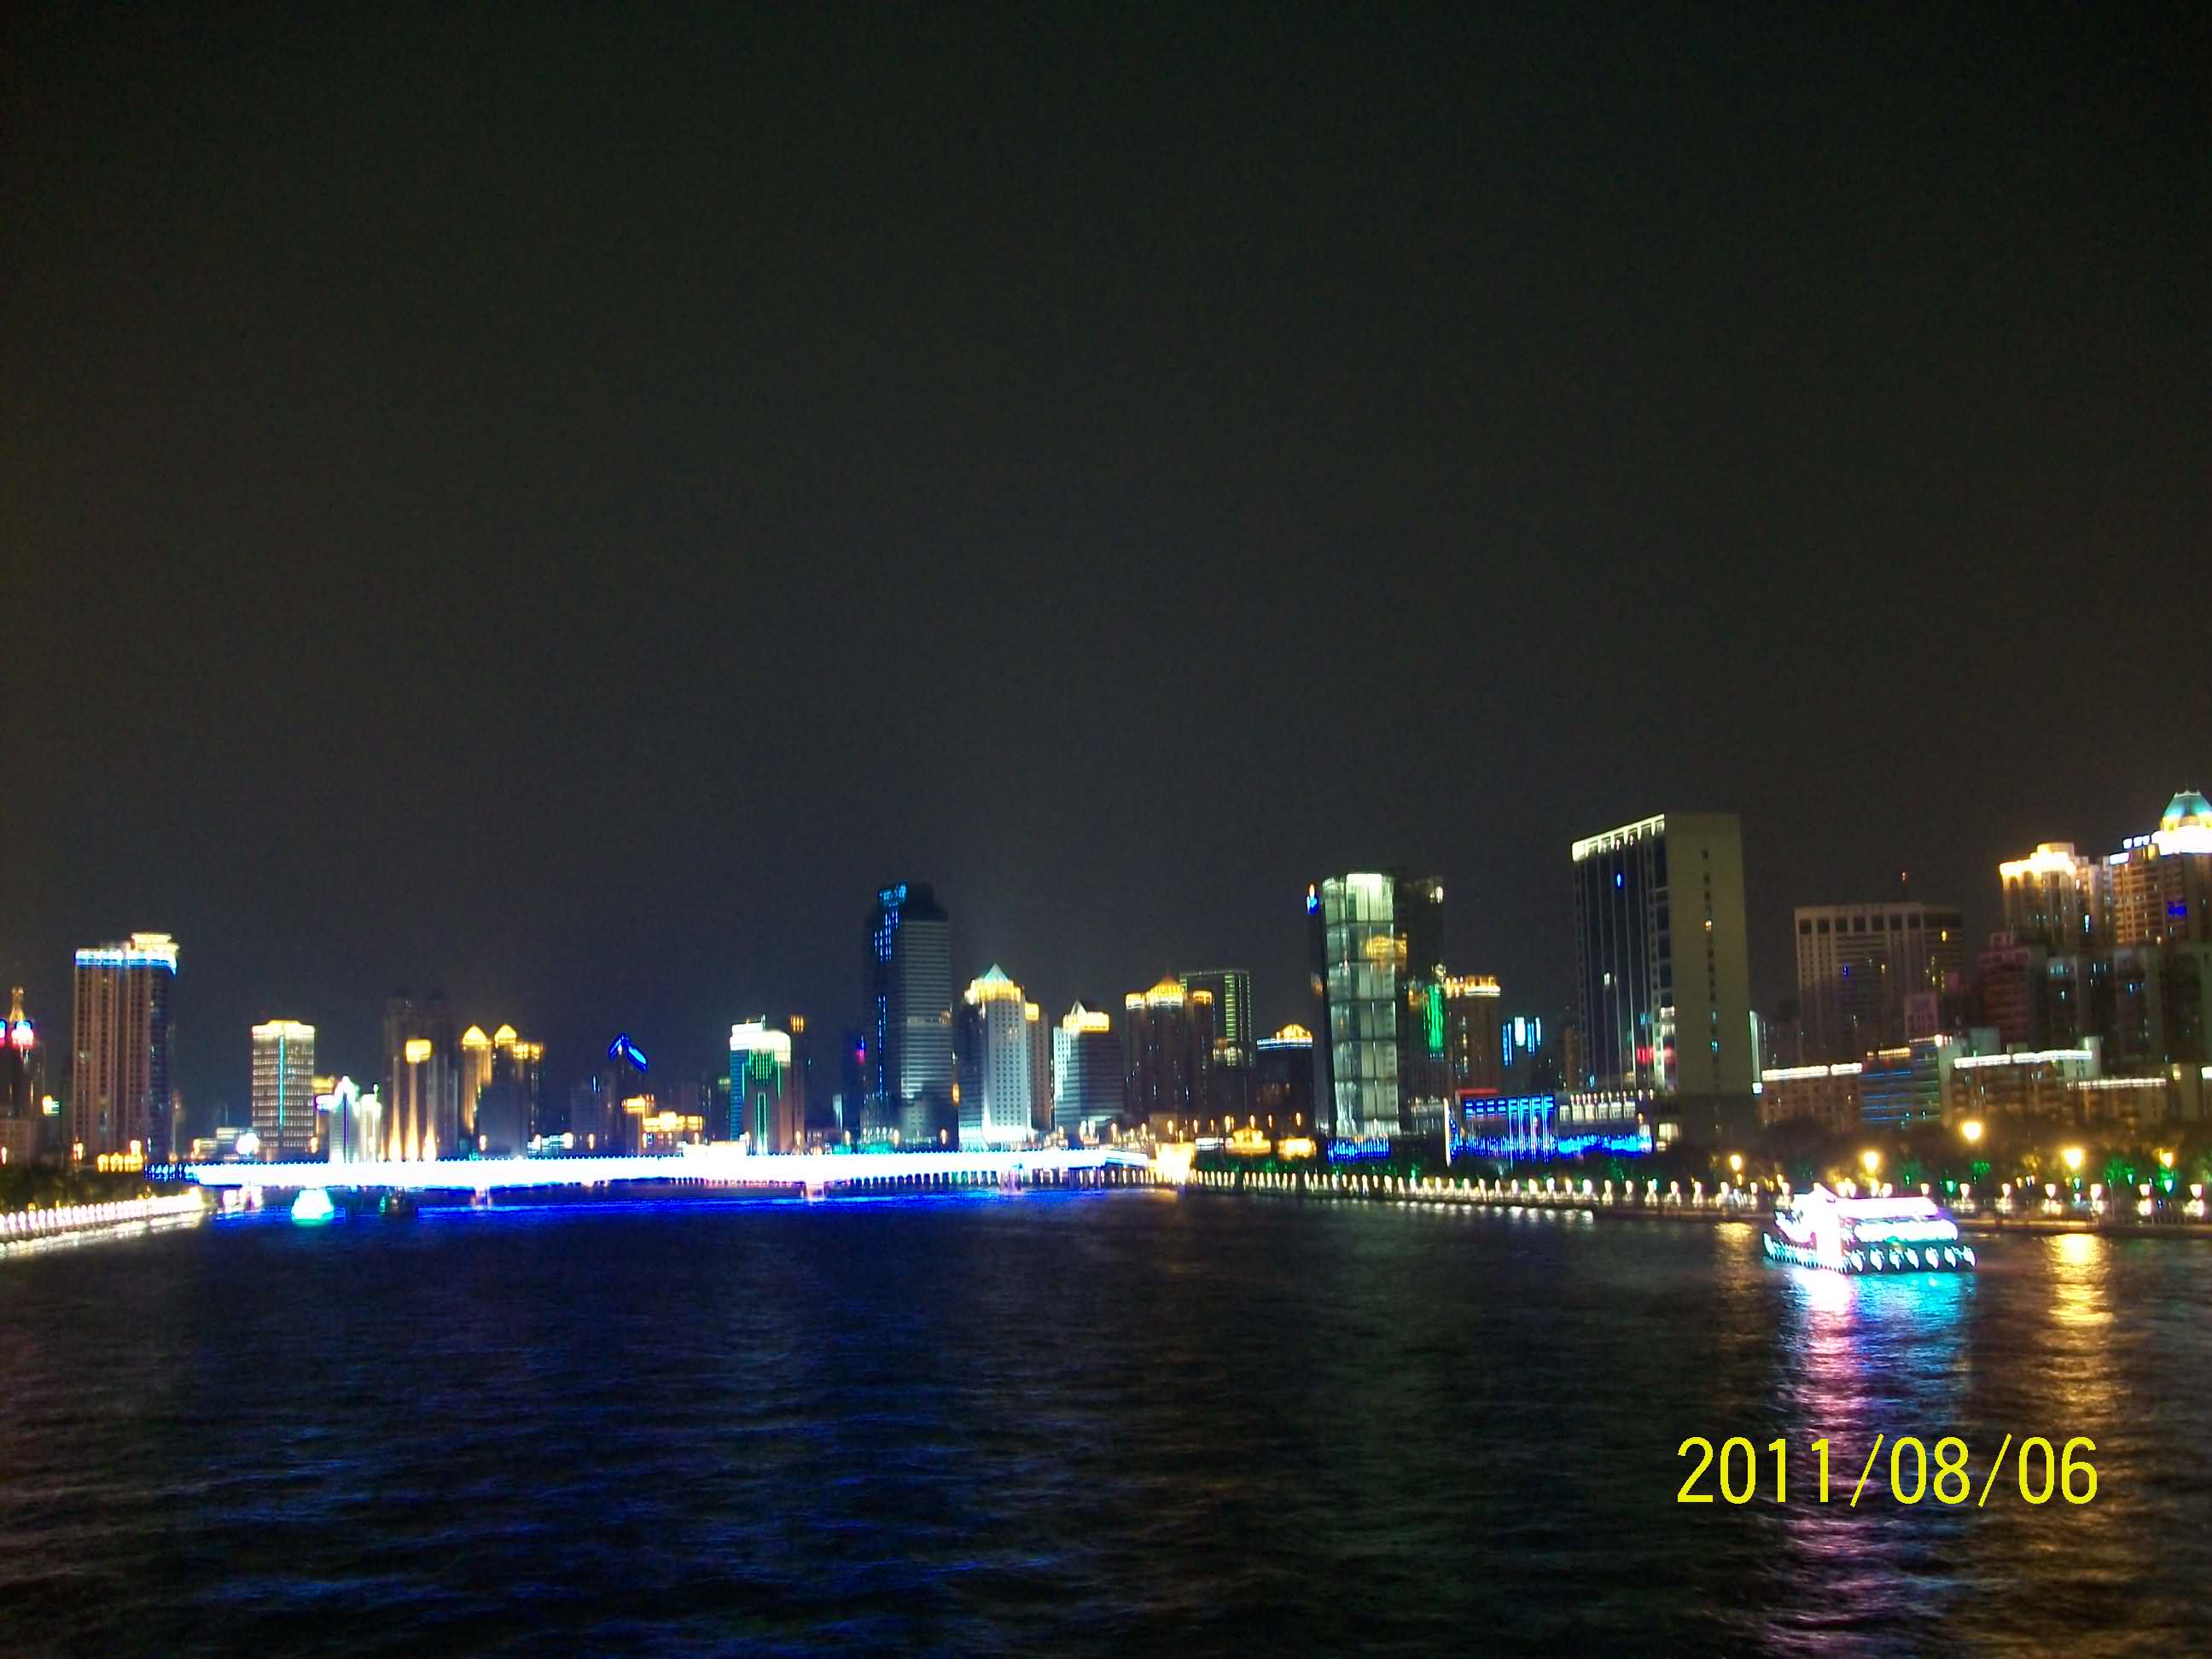 广州海印桥夜景812 / 作者:完美夏天 / 帖子ID:873